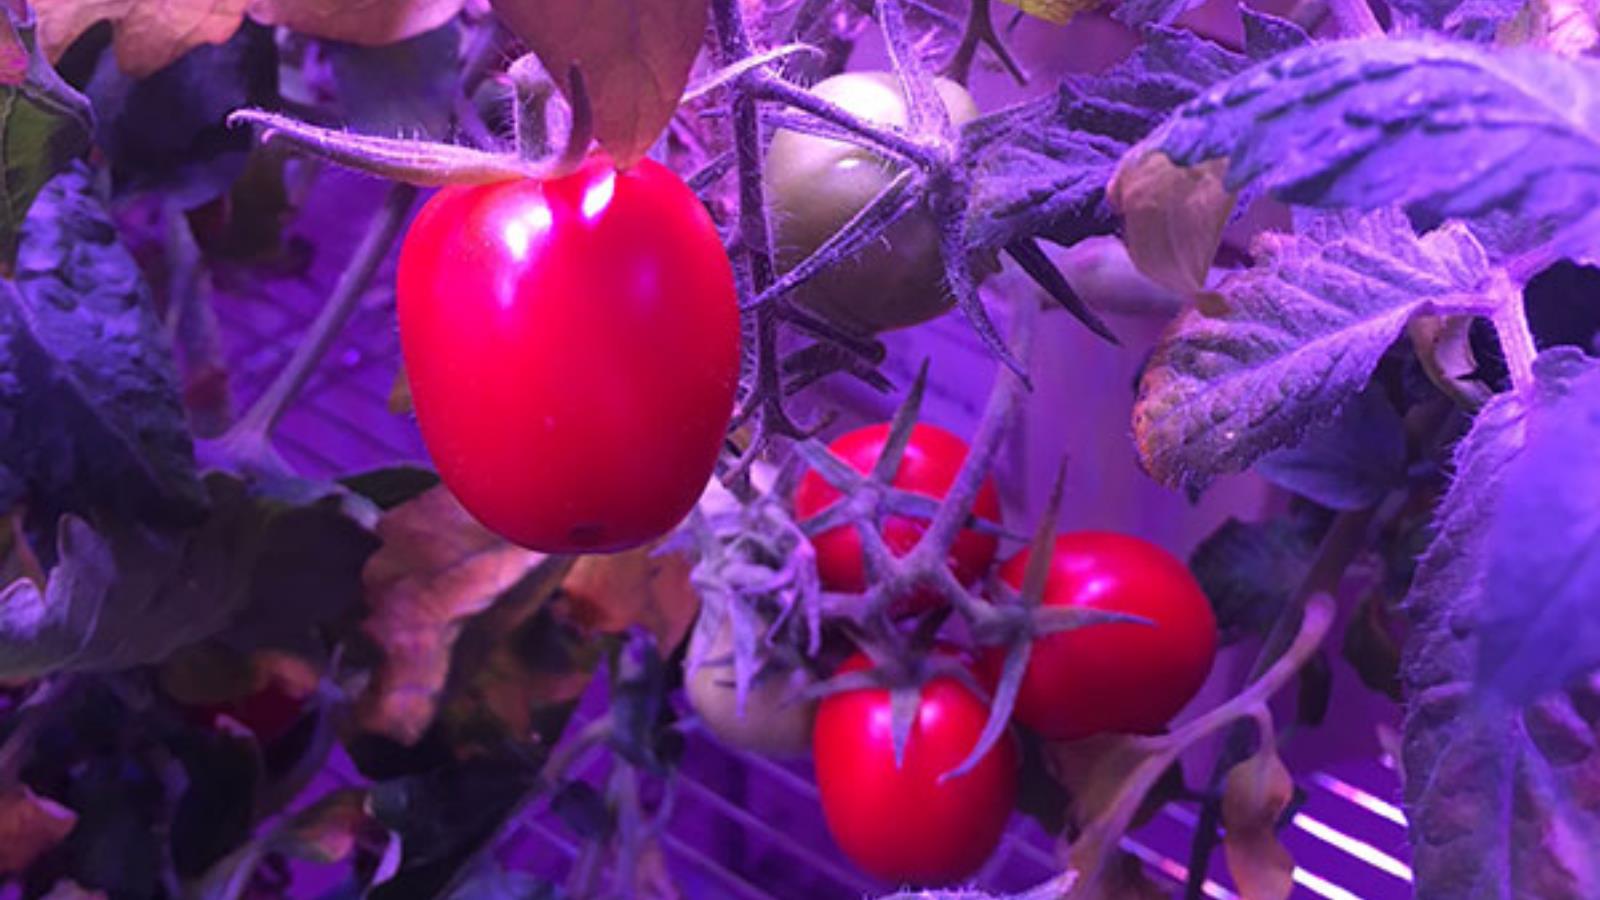 ‪نجحت تجربة استنبات الطماطم سابقا على متن محطة الفضاء الدولية (مواقع إلكترونية)‬ نجحت تجربة استنبات الطماطم سابقا على متن محطة الفضاء الدولية (مواقع إلكترونية)